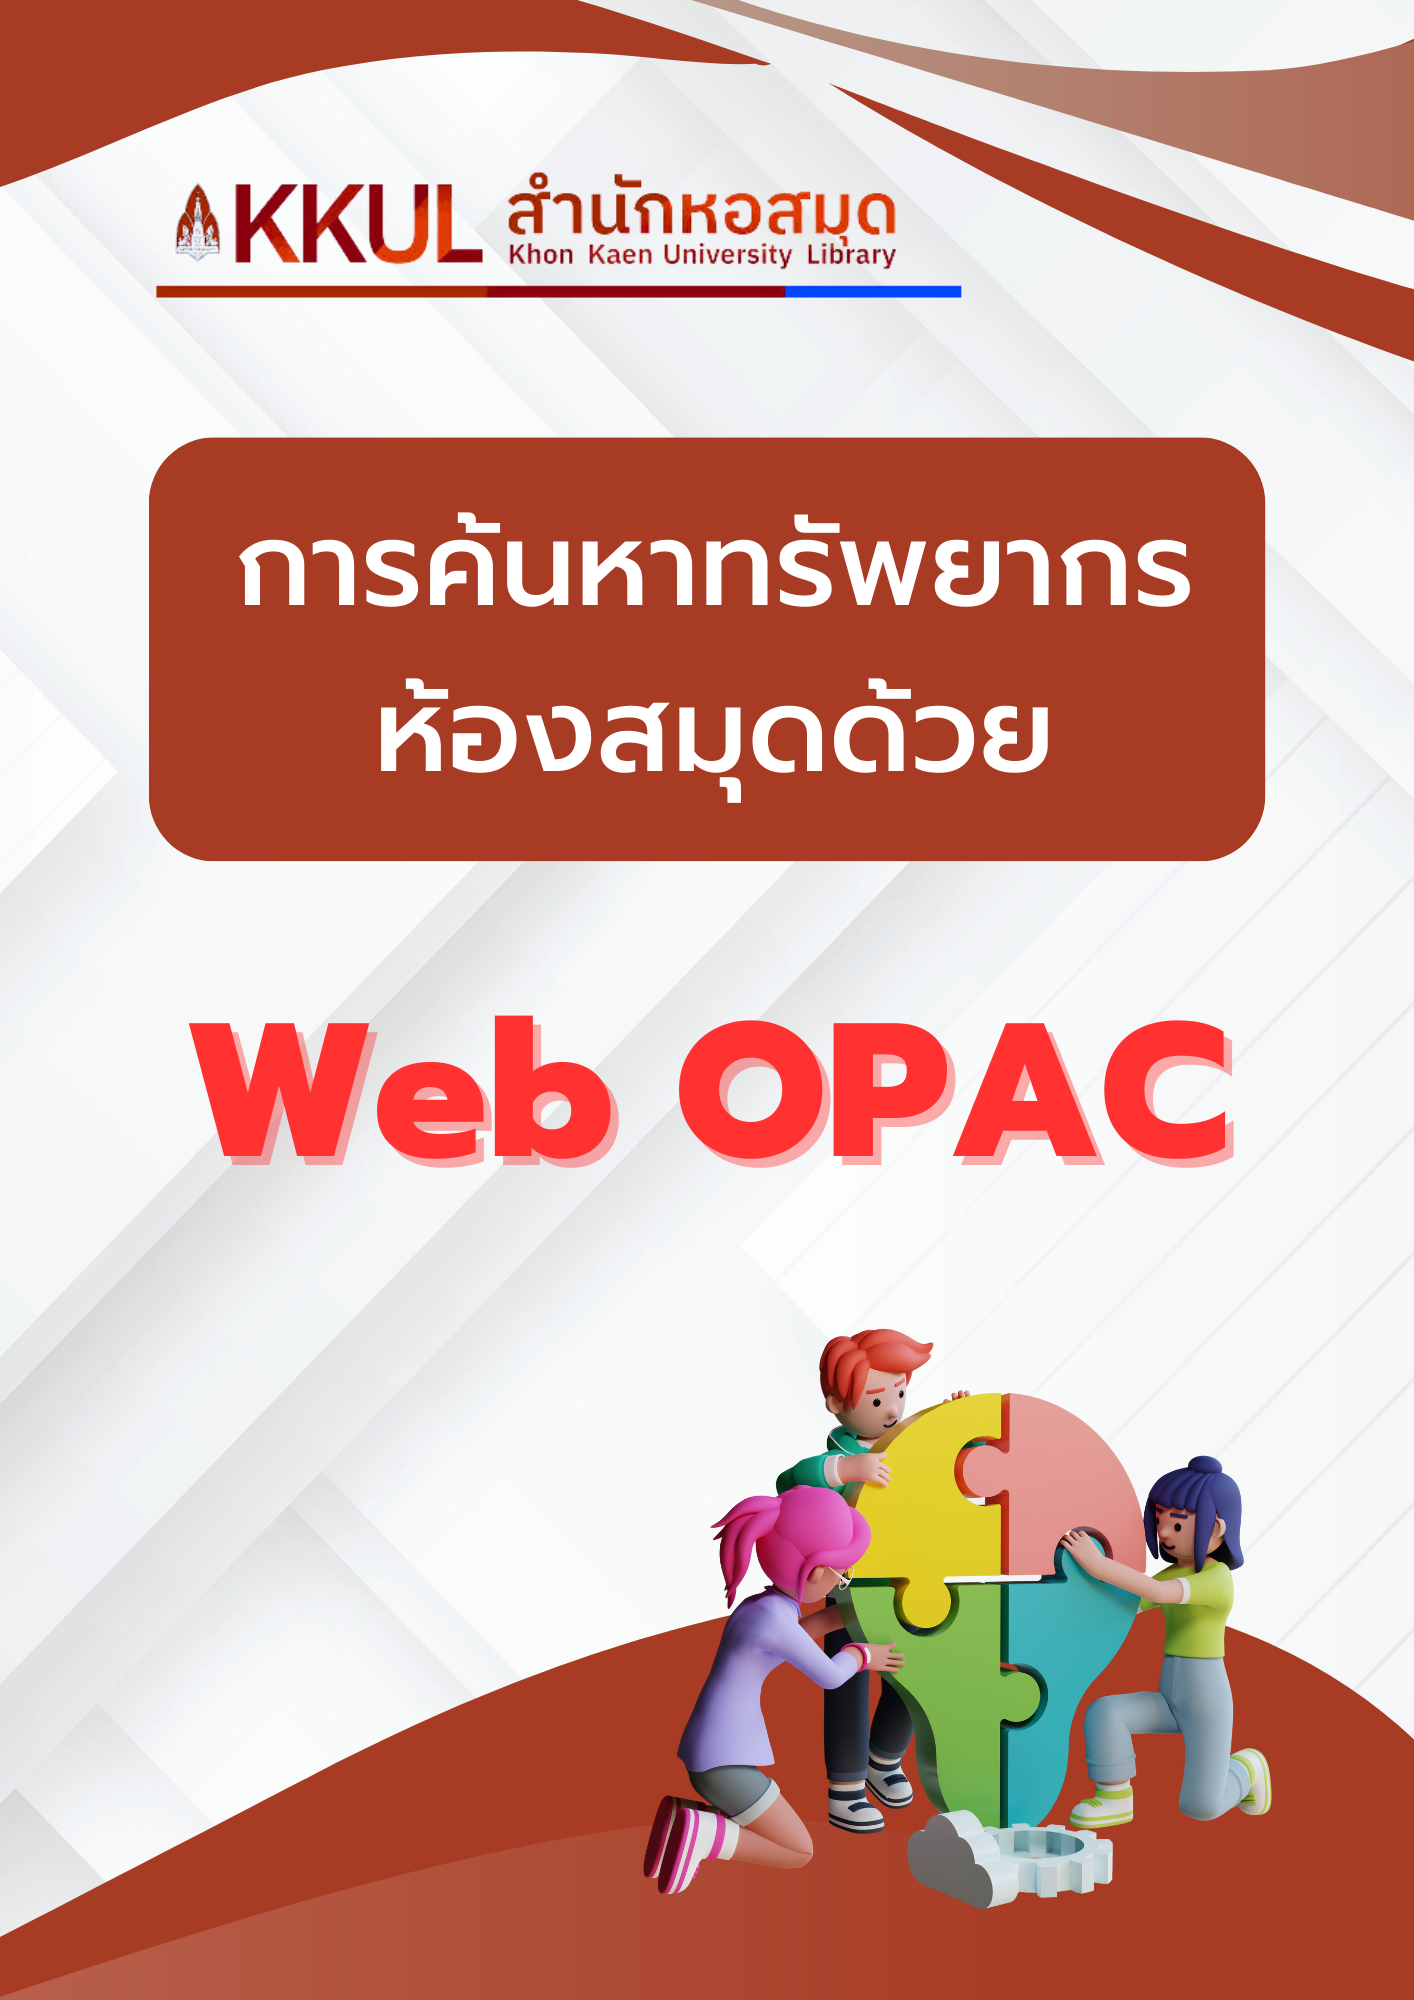 การค้นหาทรัพยากรห้องสมุดด้วย Web OPAC